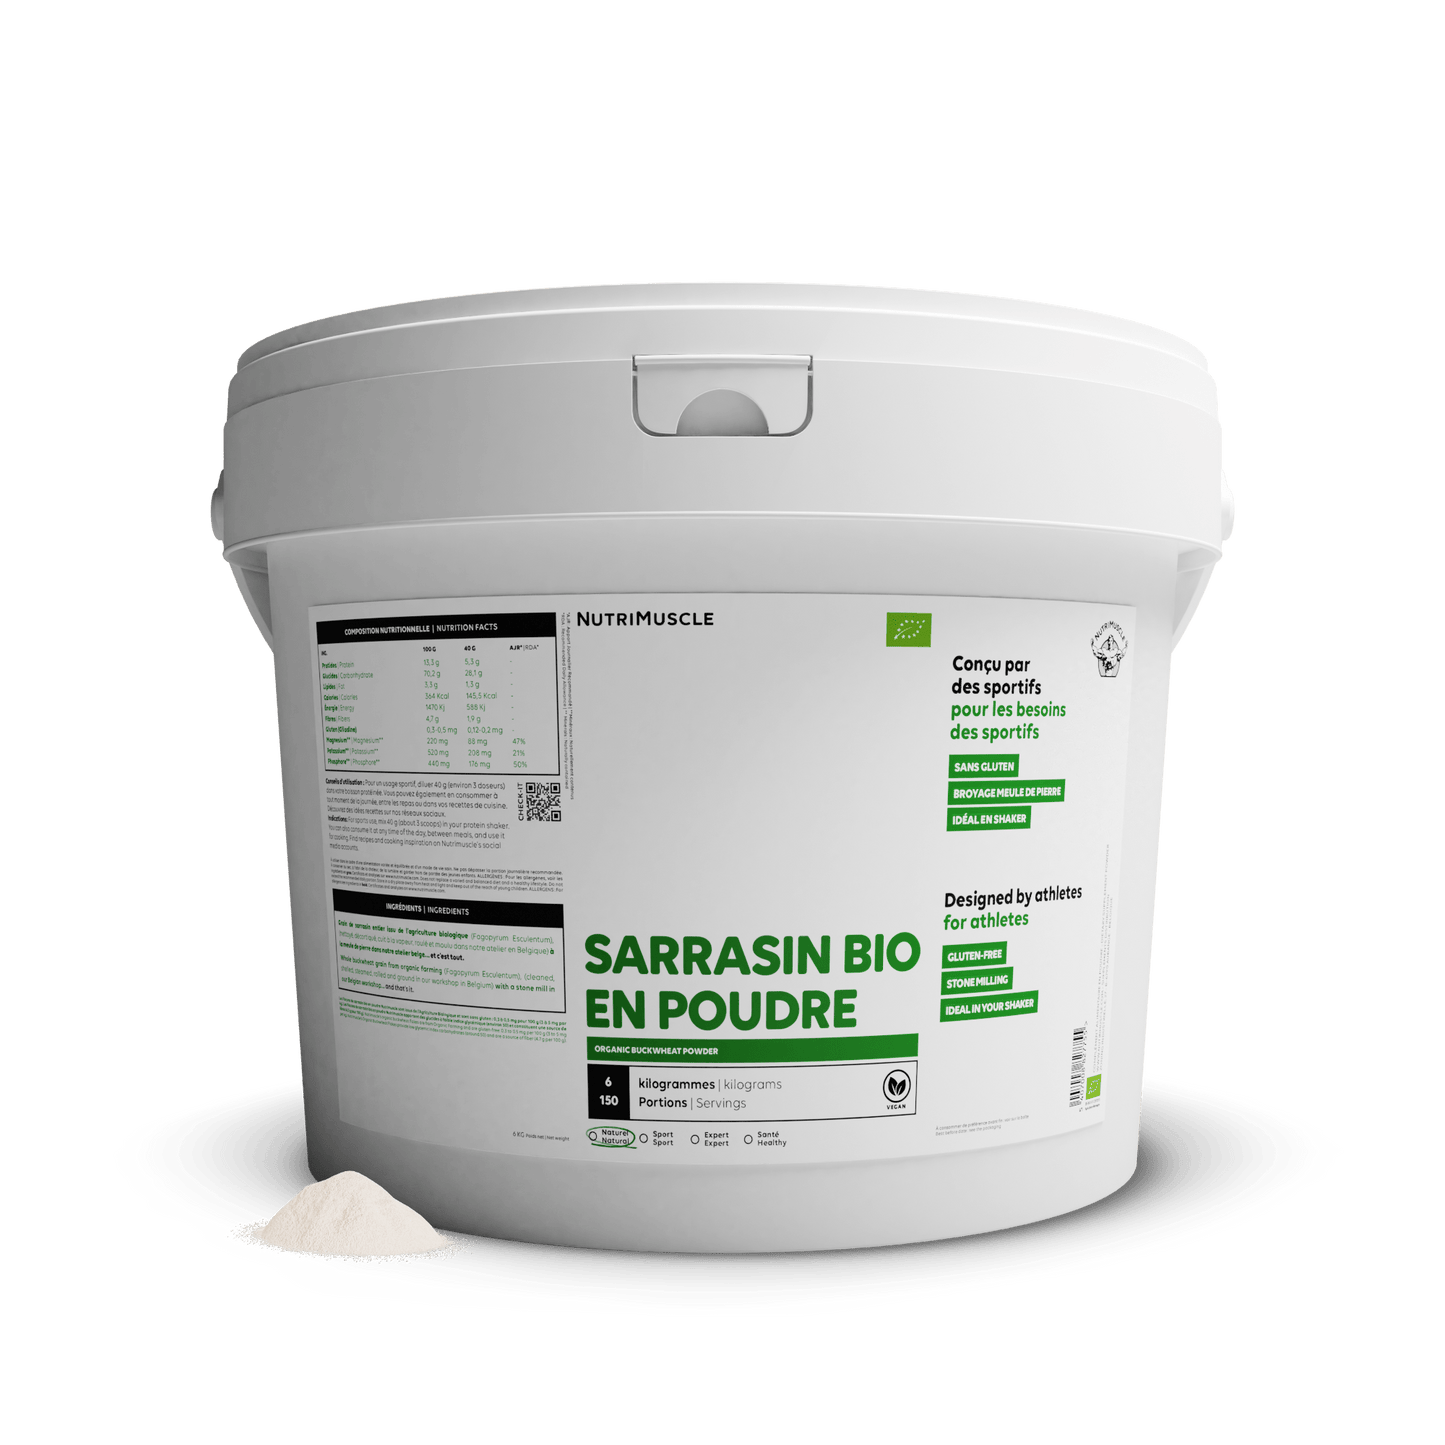 Nutrimuscle Glucides 6.00 kg Flocons de sarrasin biologiques en poudre